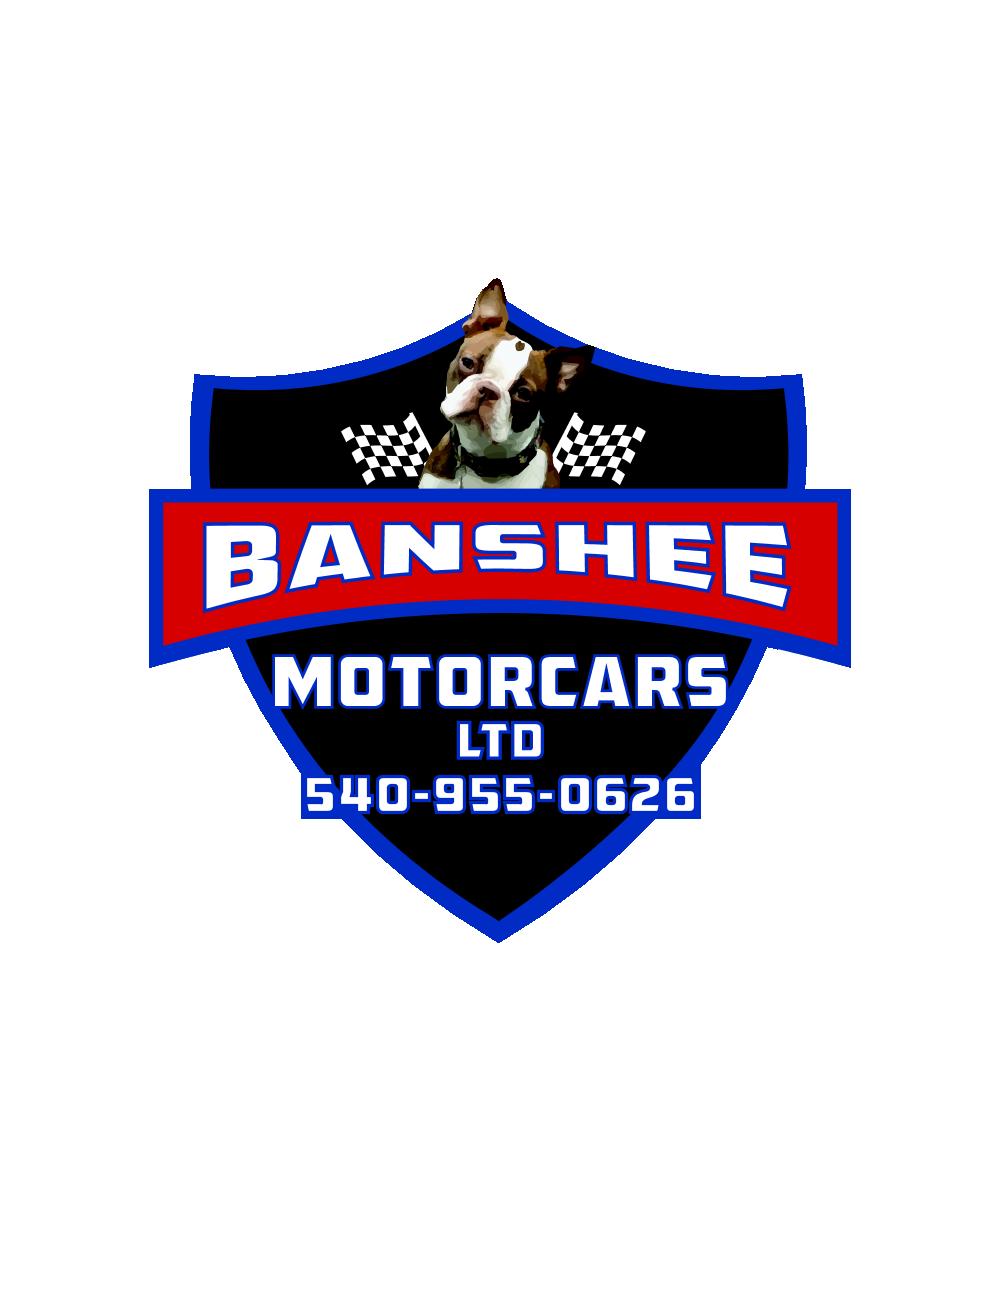 Banshee Motorcars, Ltd.